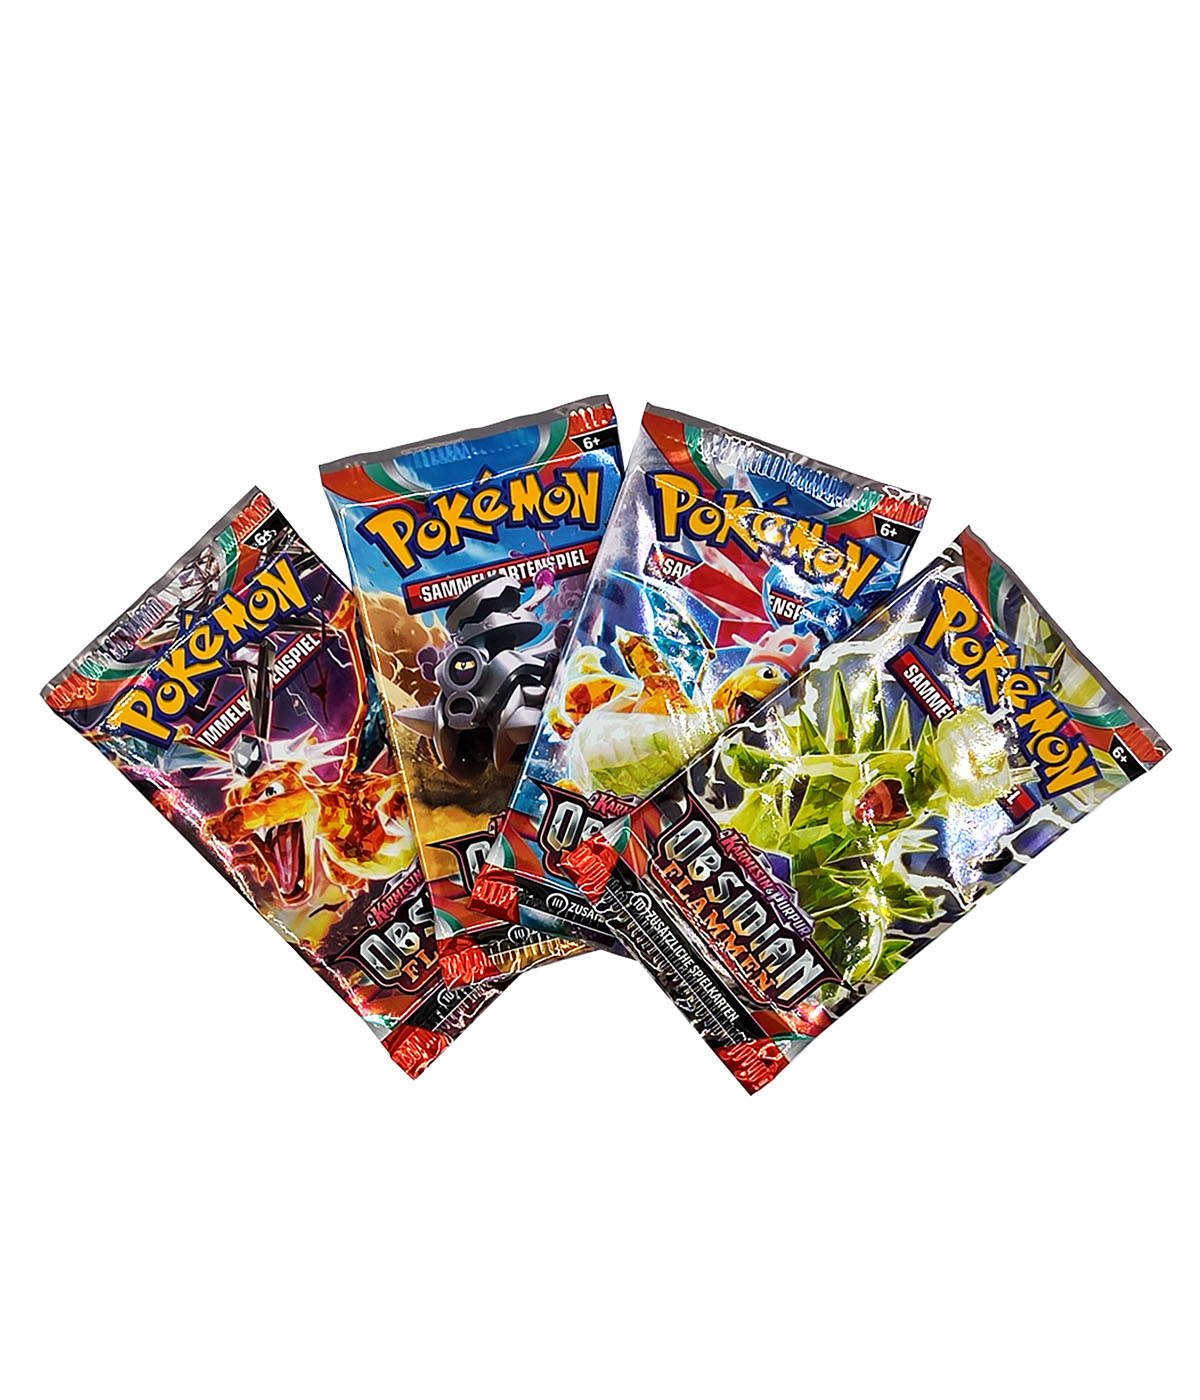 Pokémon 2er Mix-Bundle "Obsidianflammen + Karmesin & Purpur" - 2 Displays mit je 18 Boosterpacks